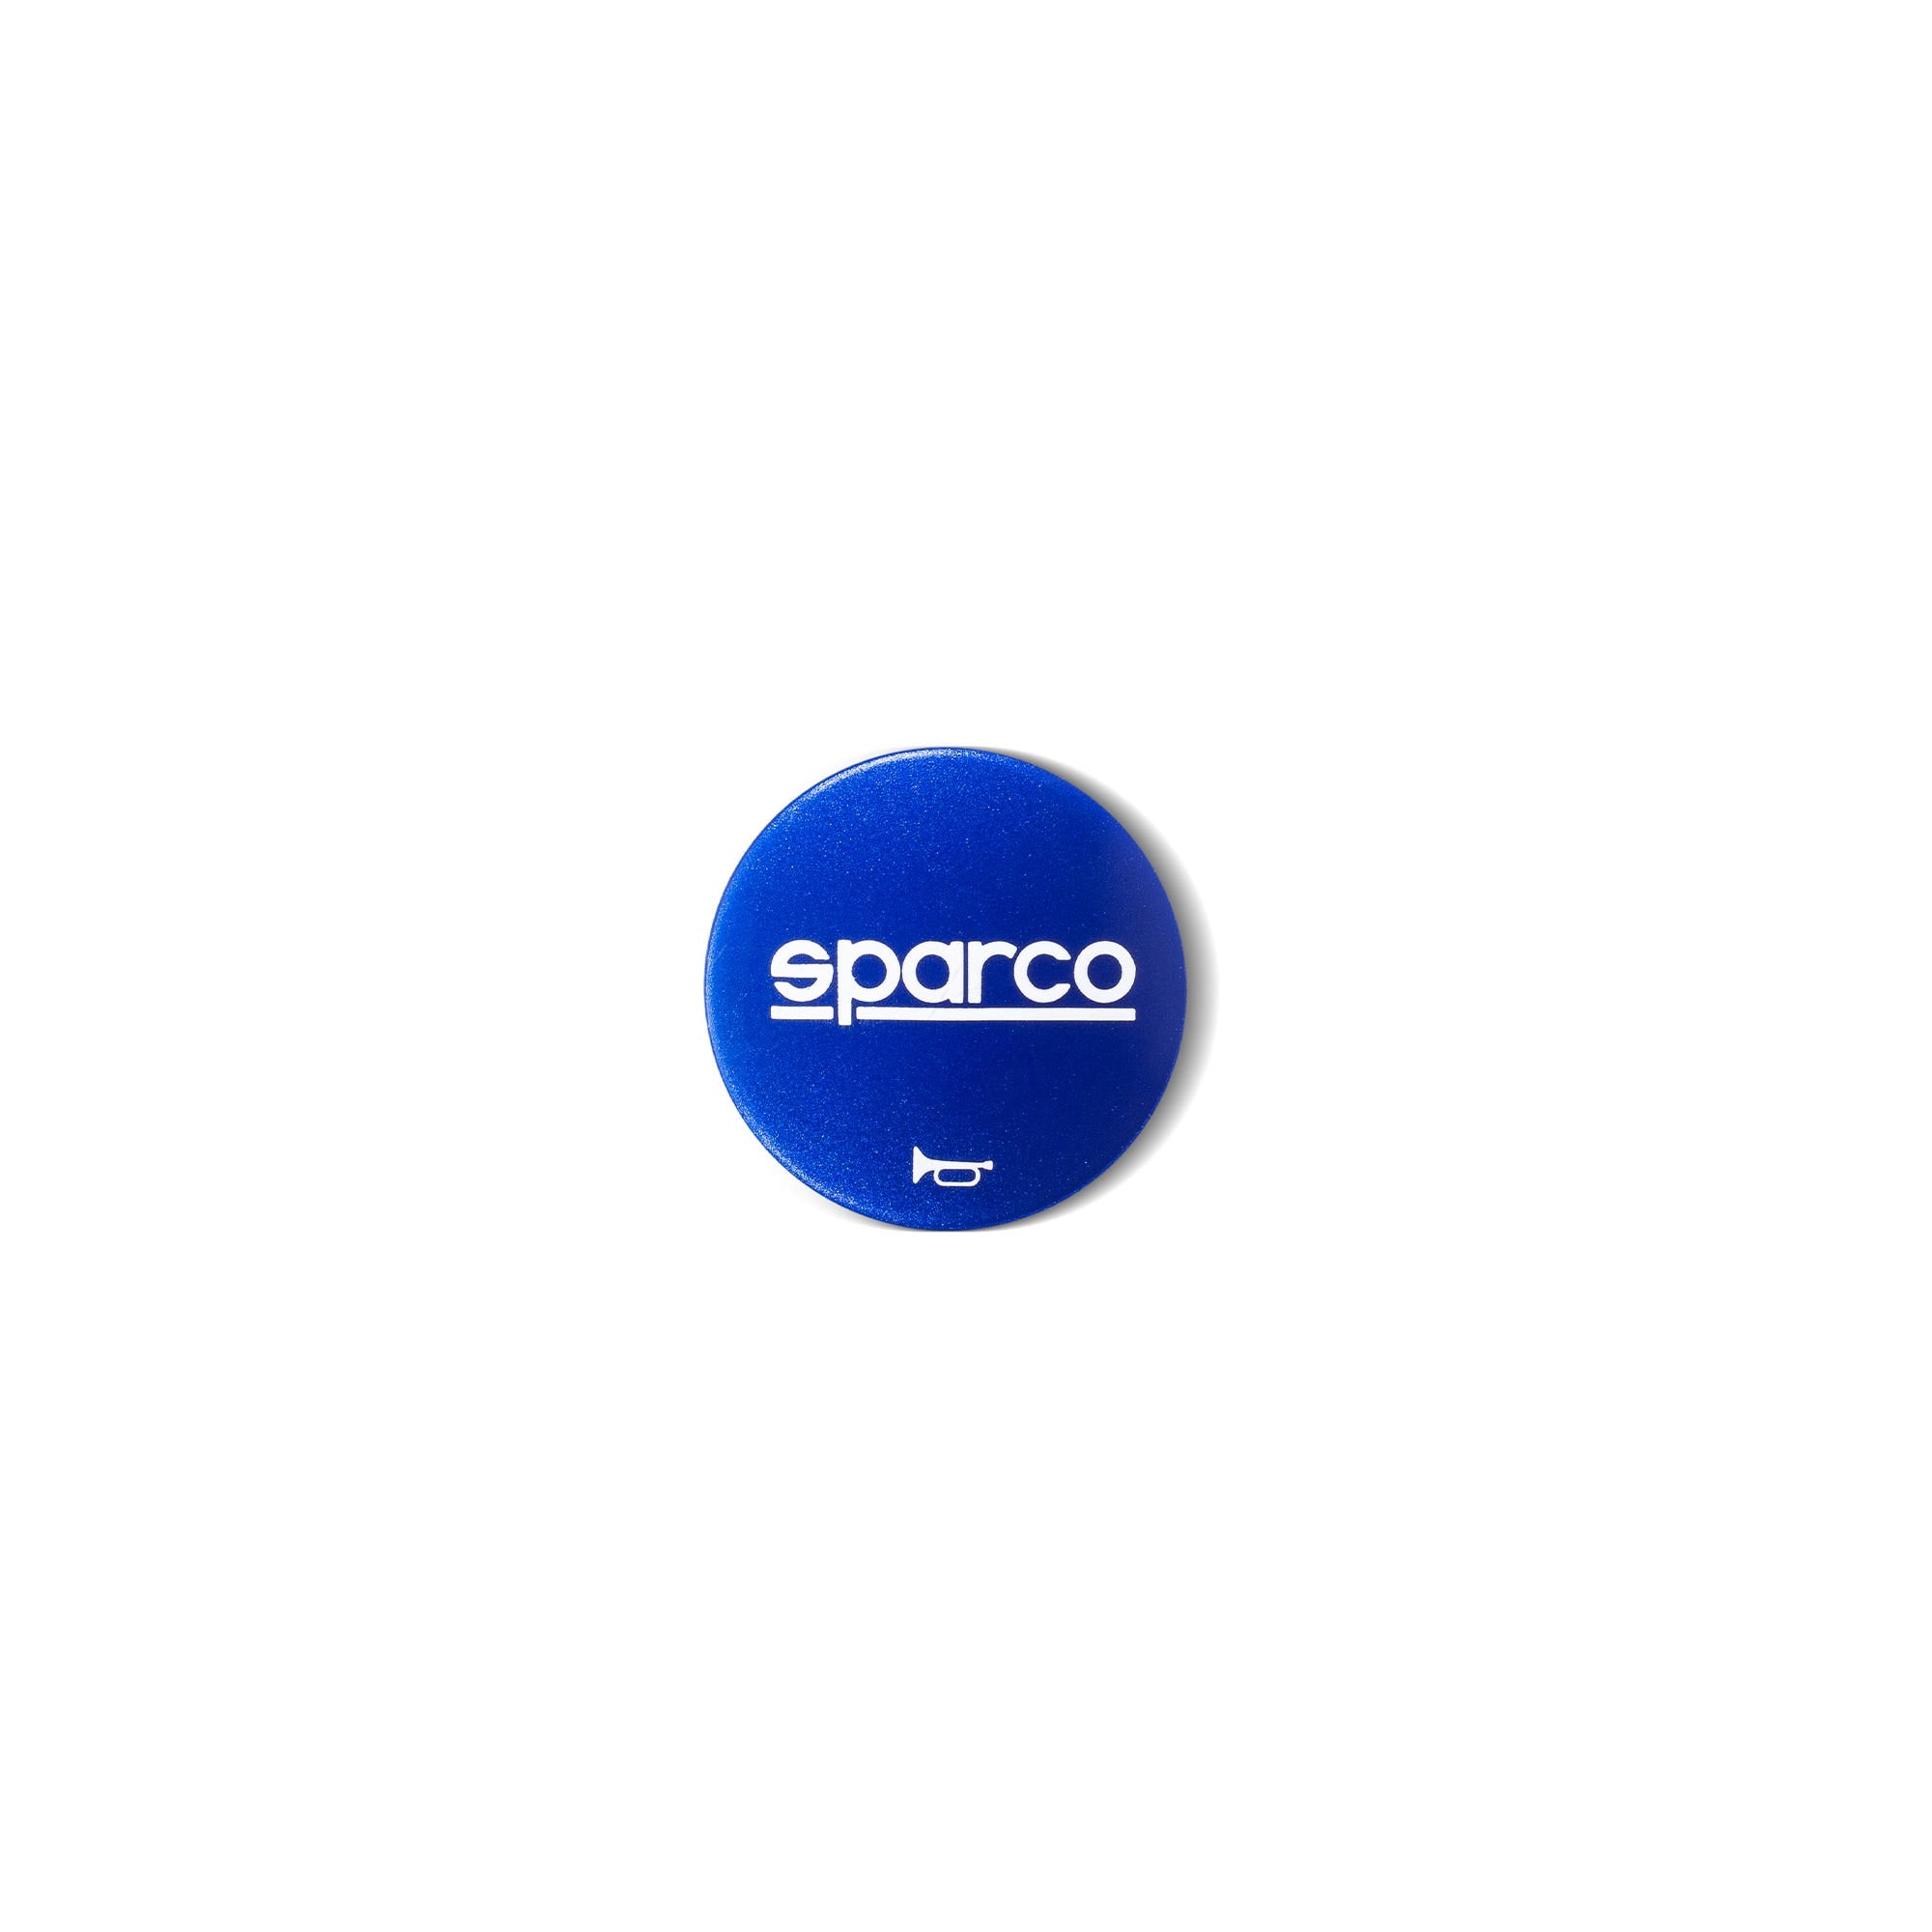 P300 - Sparco Shop